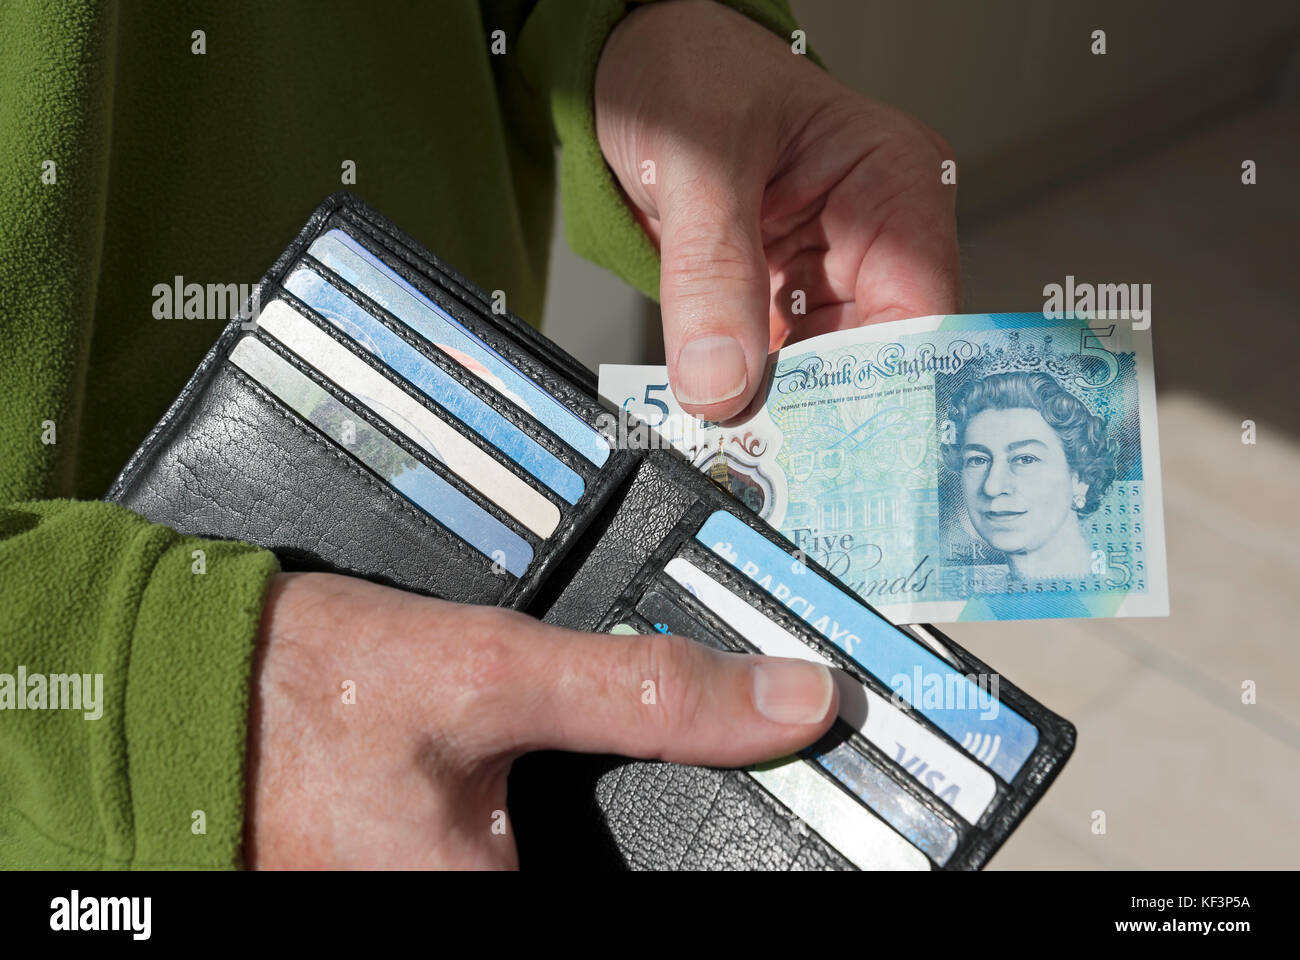 Nahaufnahme eines Mannes, der Bargeld nimmt neue £5 fünf-Pfund-Banknoten Englische Geldscheine aus der Brieftasche England Großbritannien GB Großbritannien Stockfoto